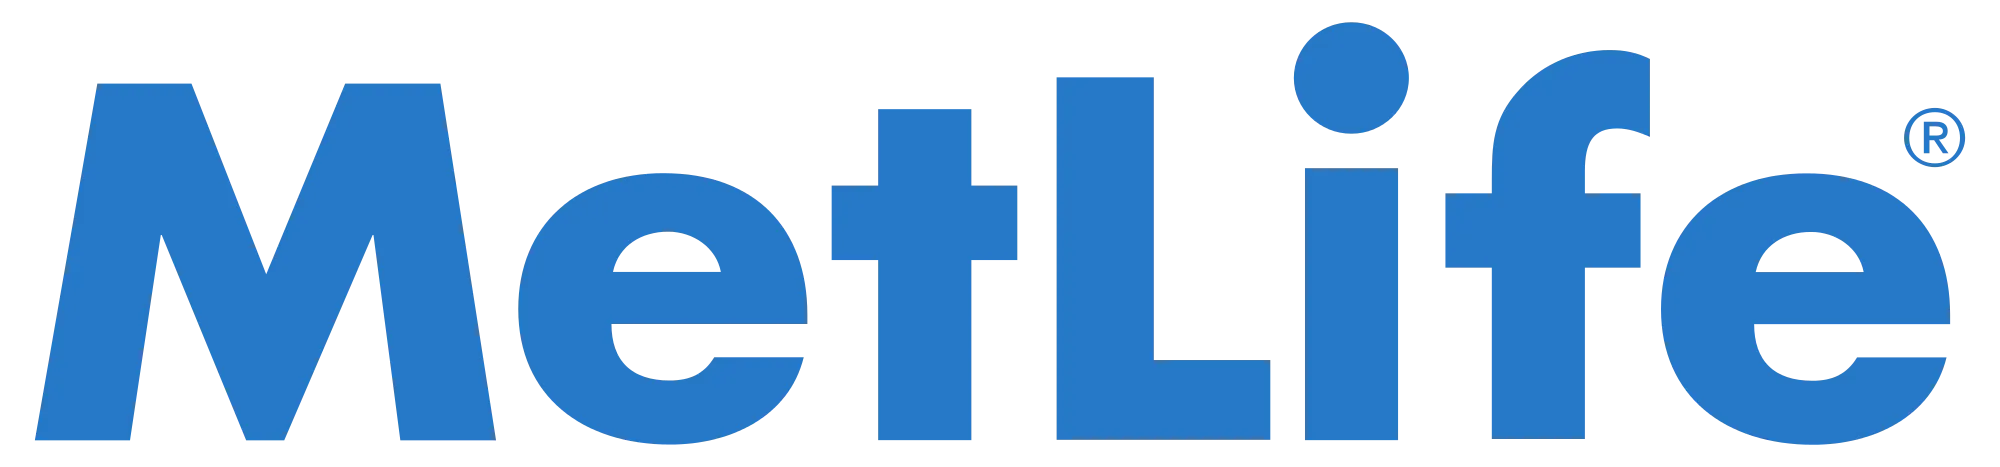 MetLife-Insurance.png